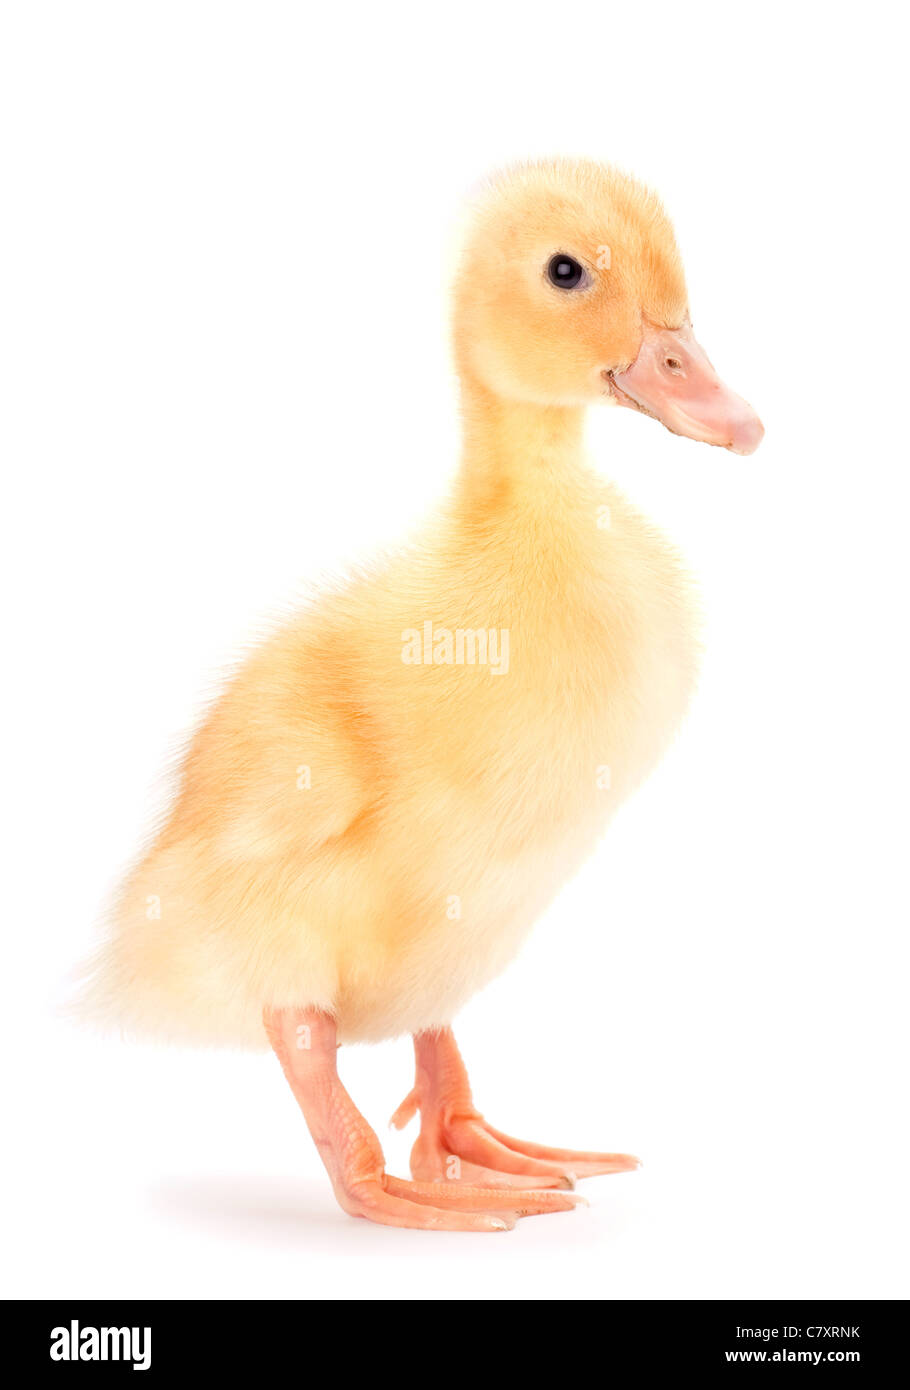 Giallo baby duck su sfondo bianco Foto Stock